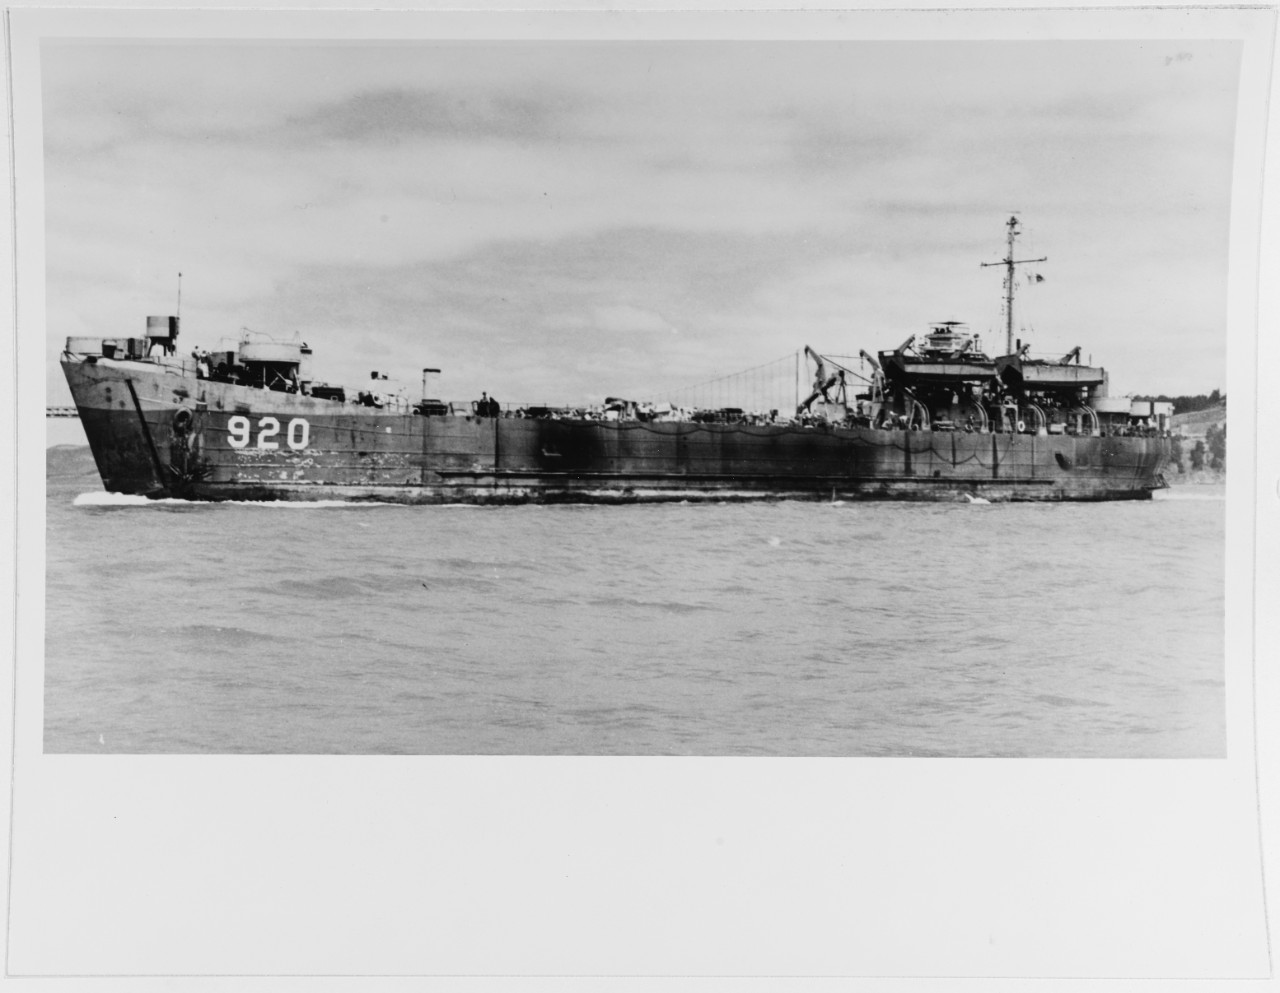 USS LST-920